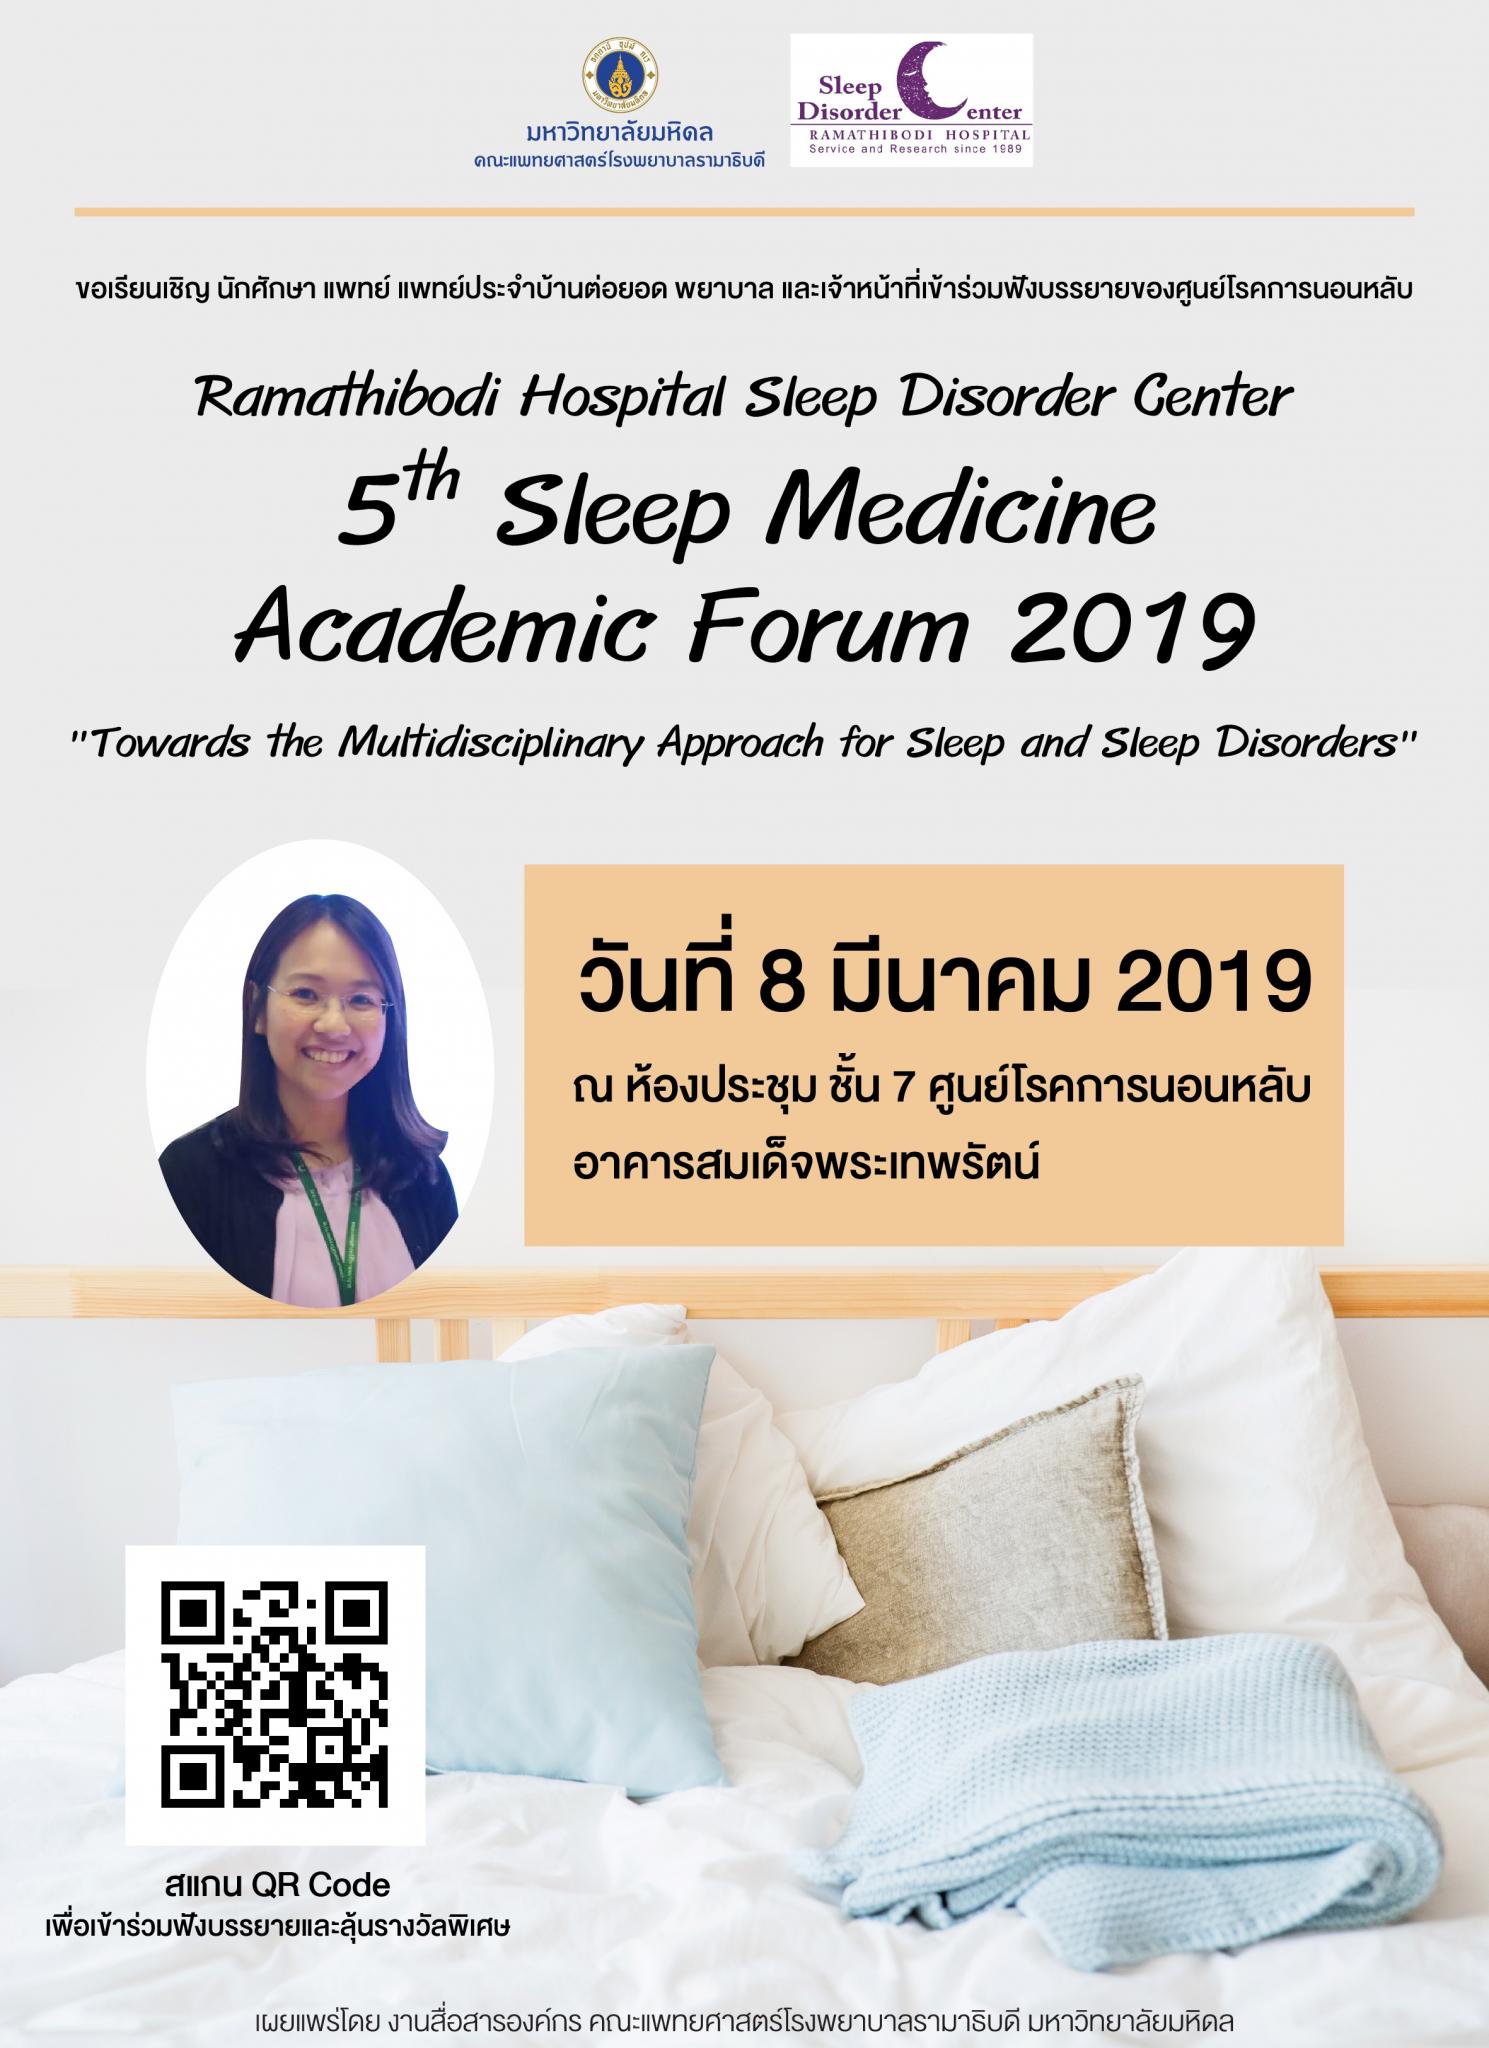 5th Sleep Medicine Academic Forum 2019 "Towards the Muttidisciplinary Approach for Sleep and Sleep Disorders"